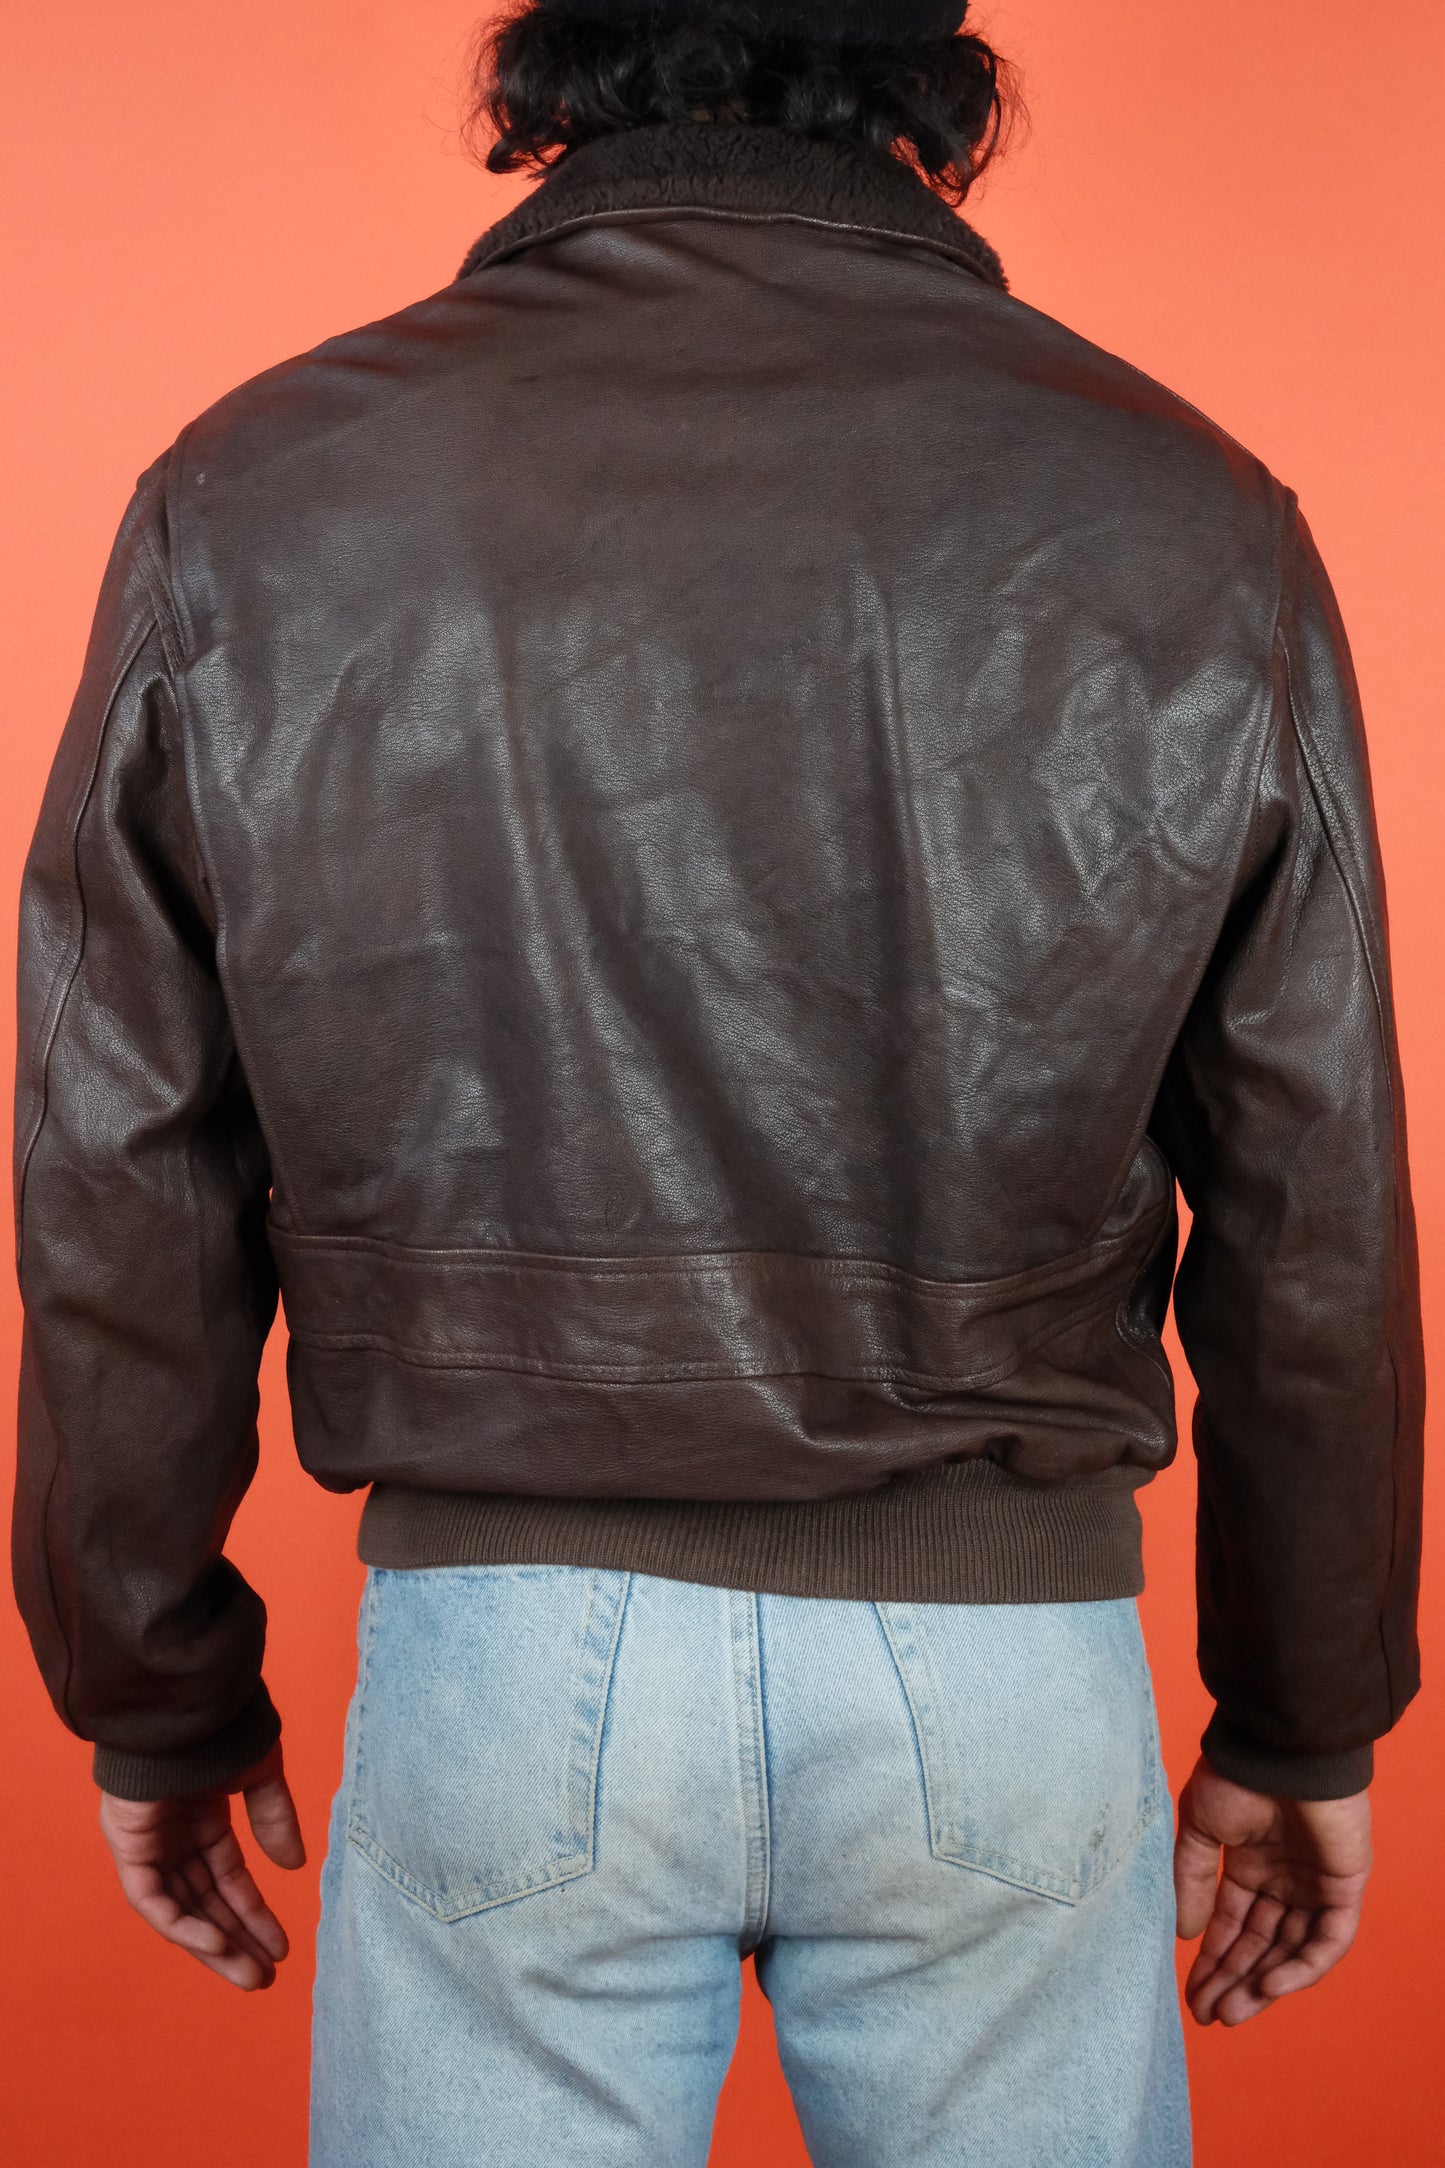 Type G-1 Leather Jacket - vintage clothing clochard92.com